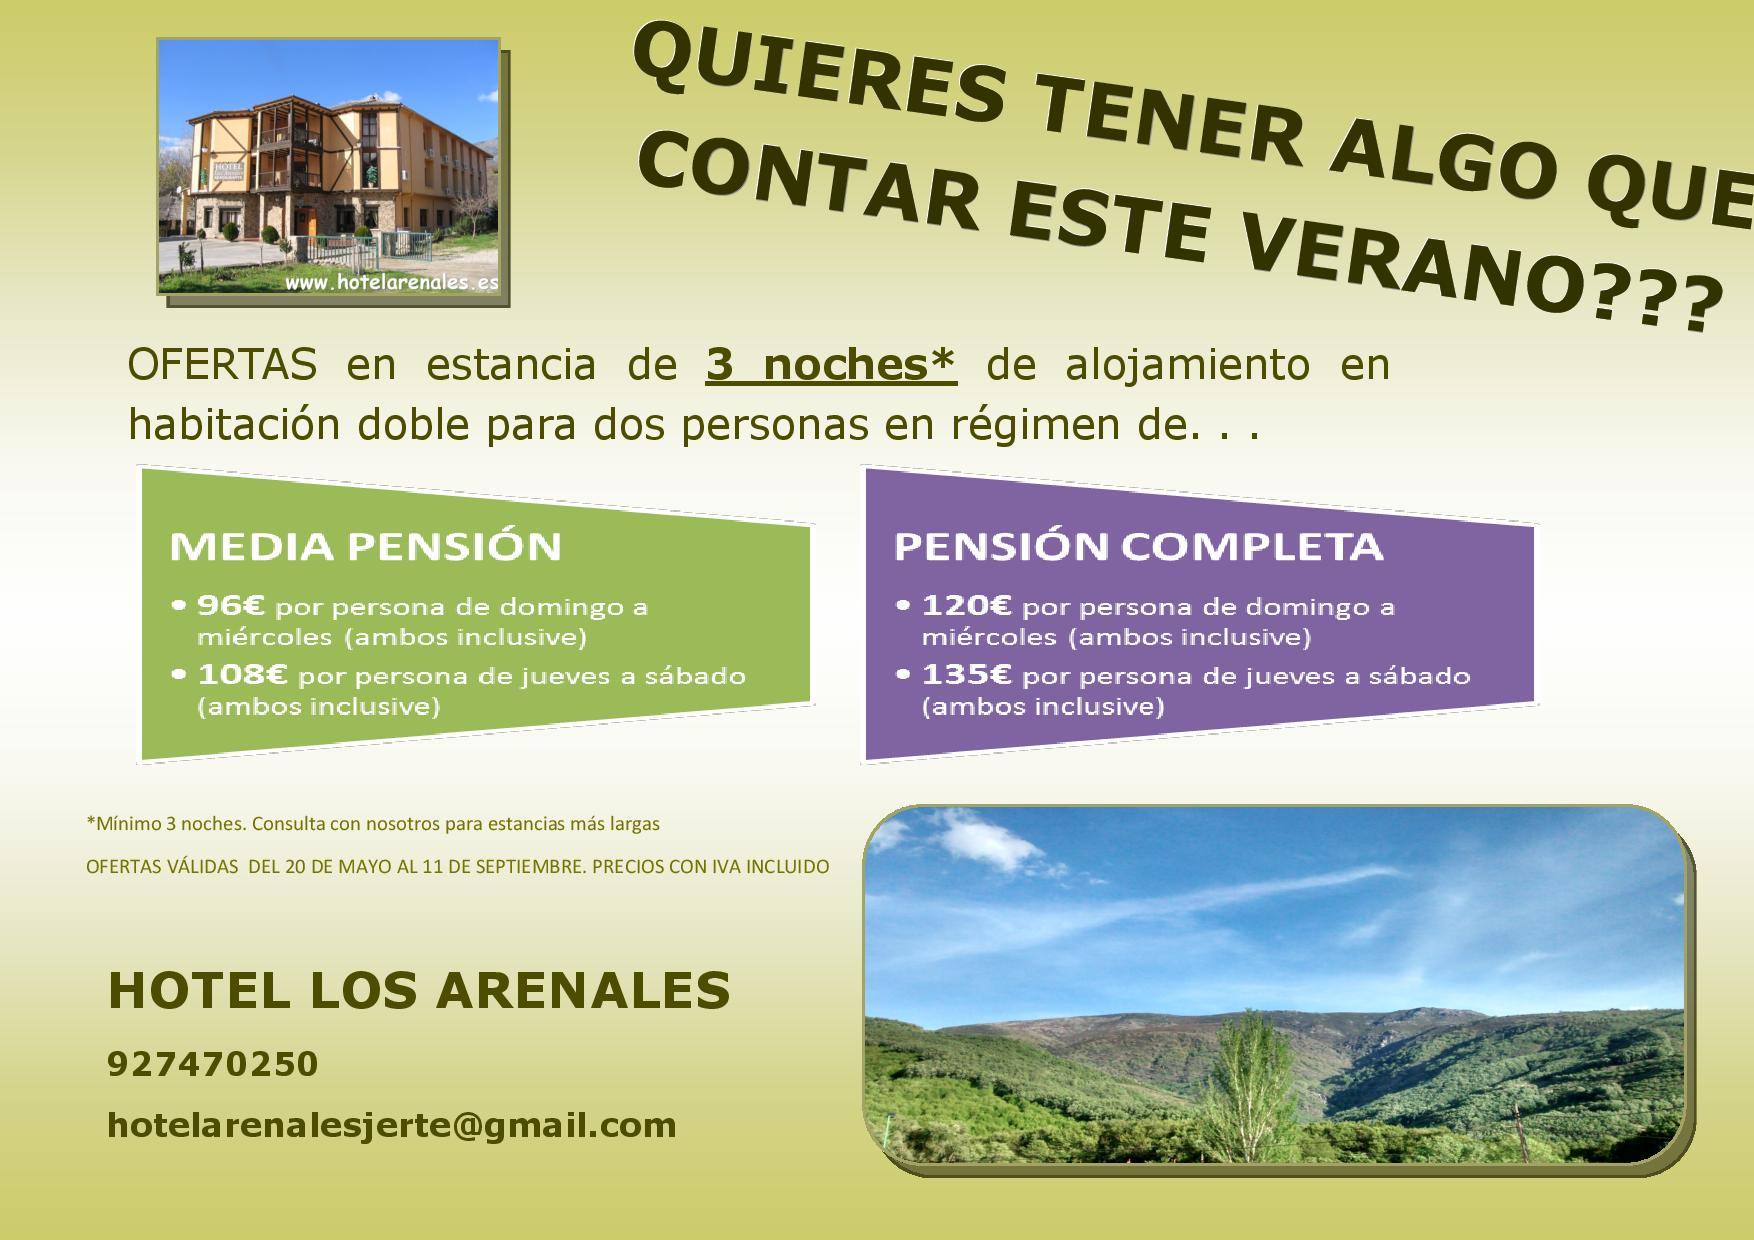 Hotel Los Arenales Oferta para el Verano